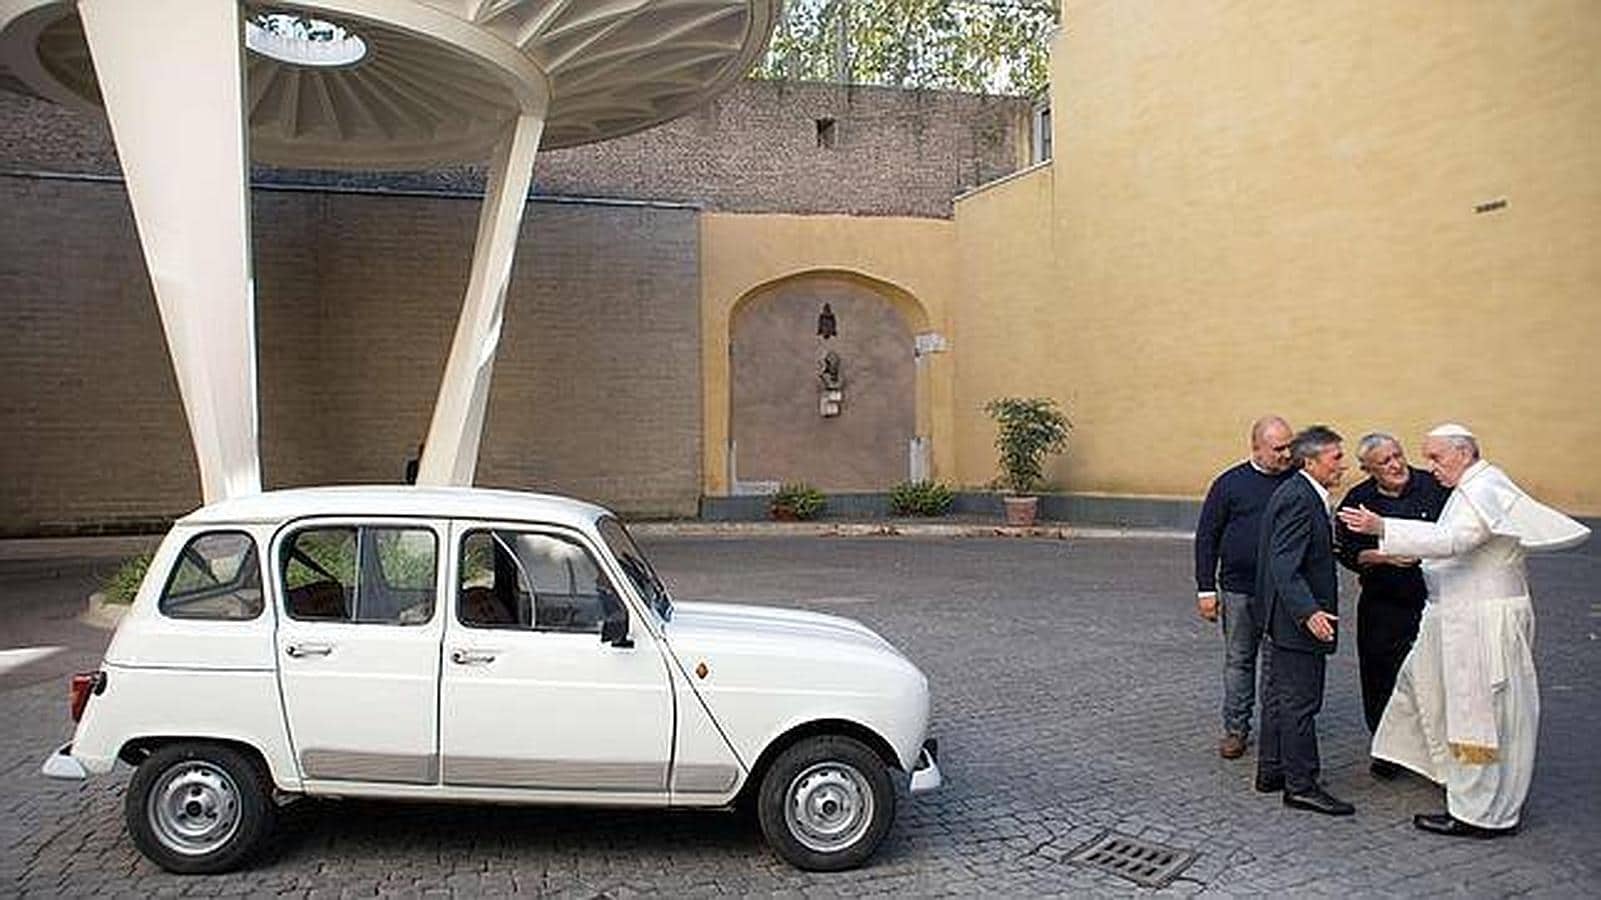 Particularmente famoso es el Renault 4 que el Papa recibió como regalo, y que perteneció al párroco italiano Renzo Rocca